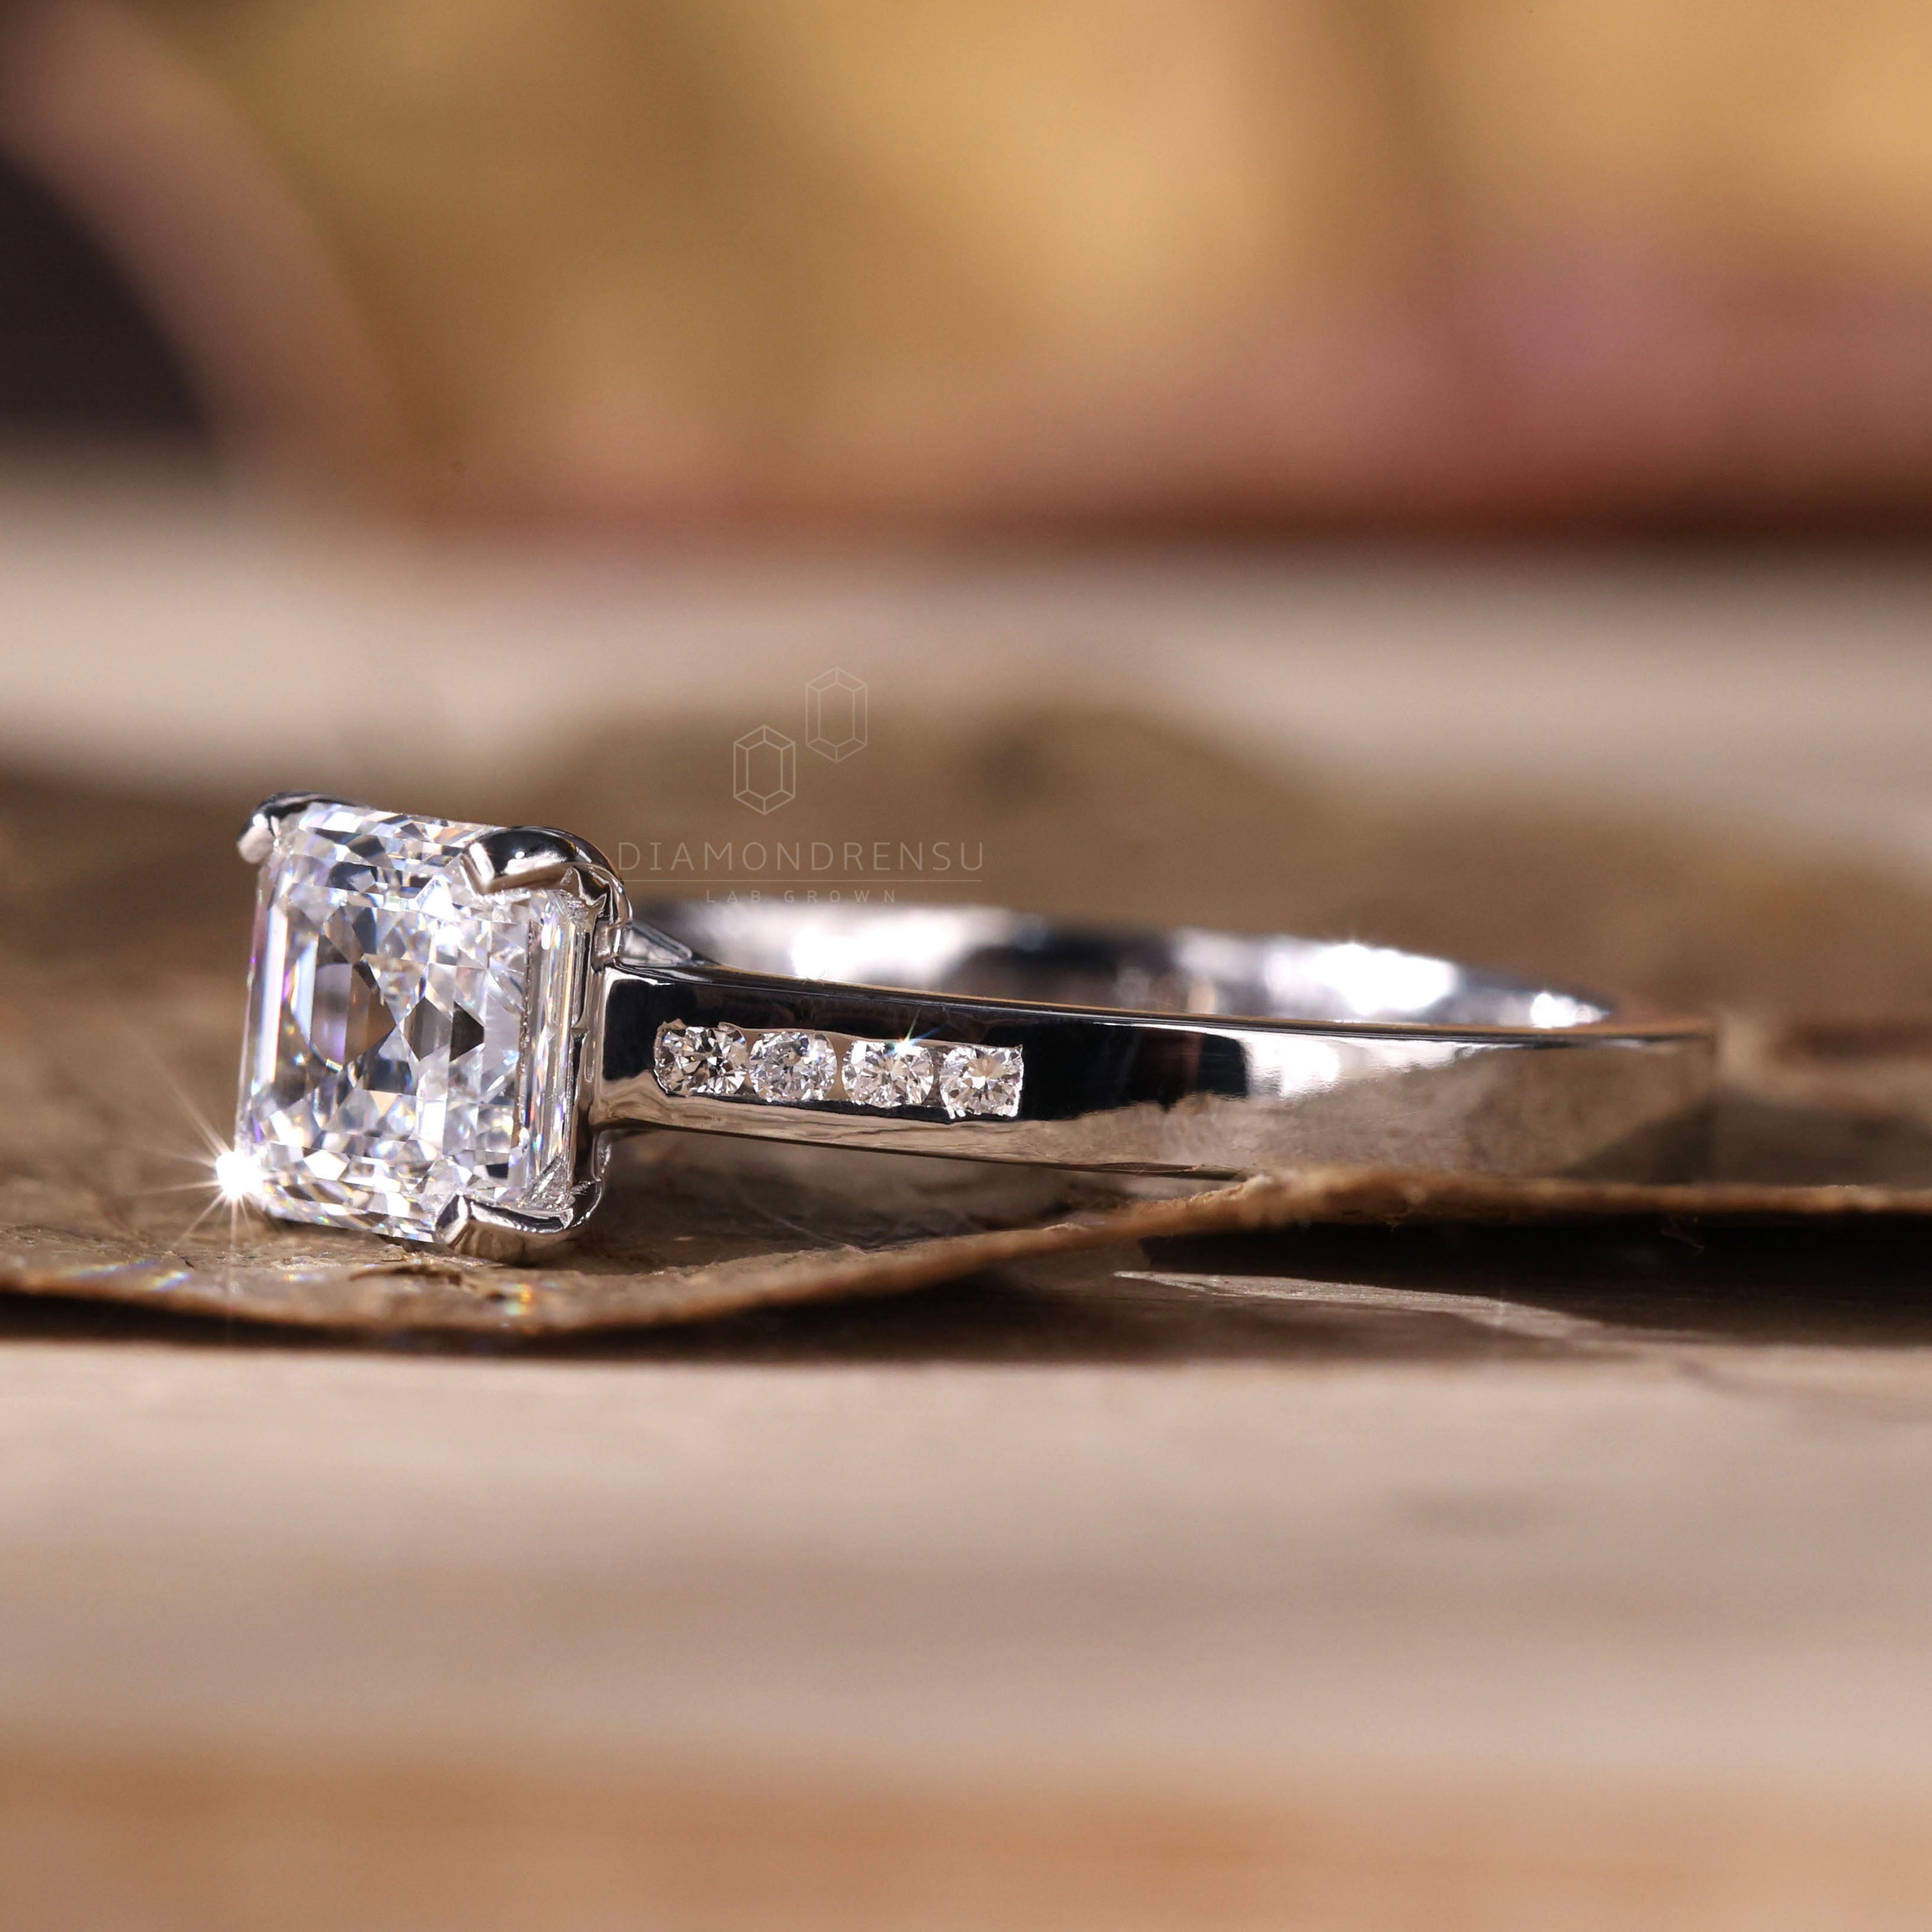 diamond wedding ring - diamondrensu